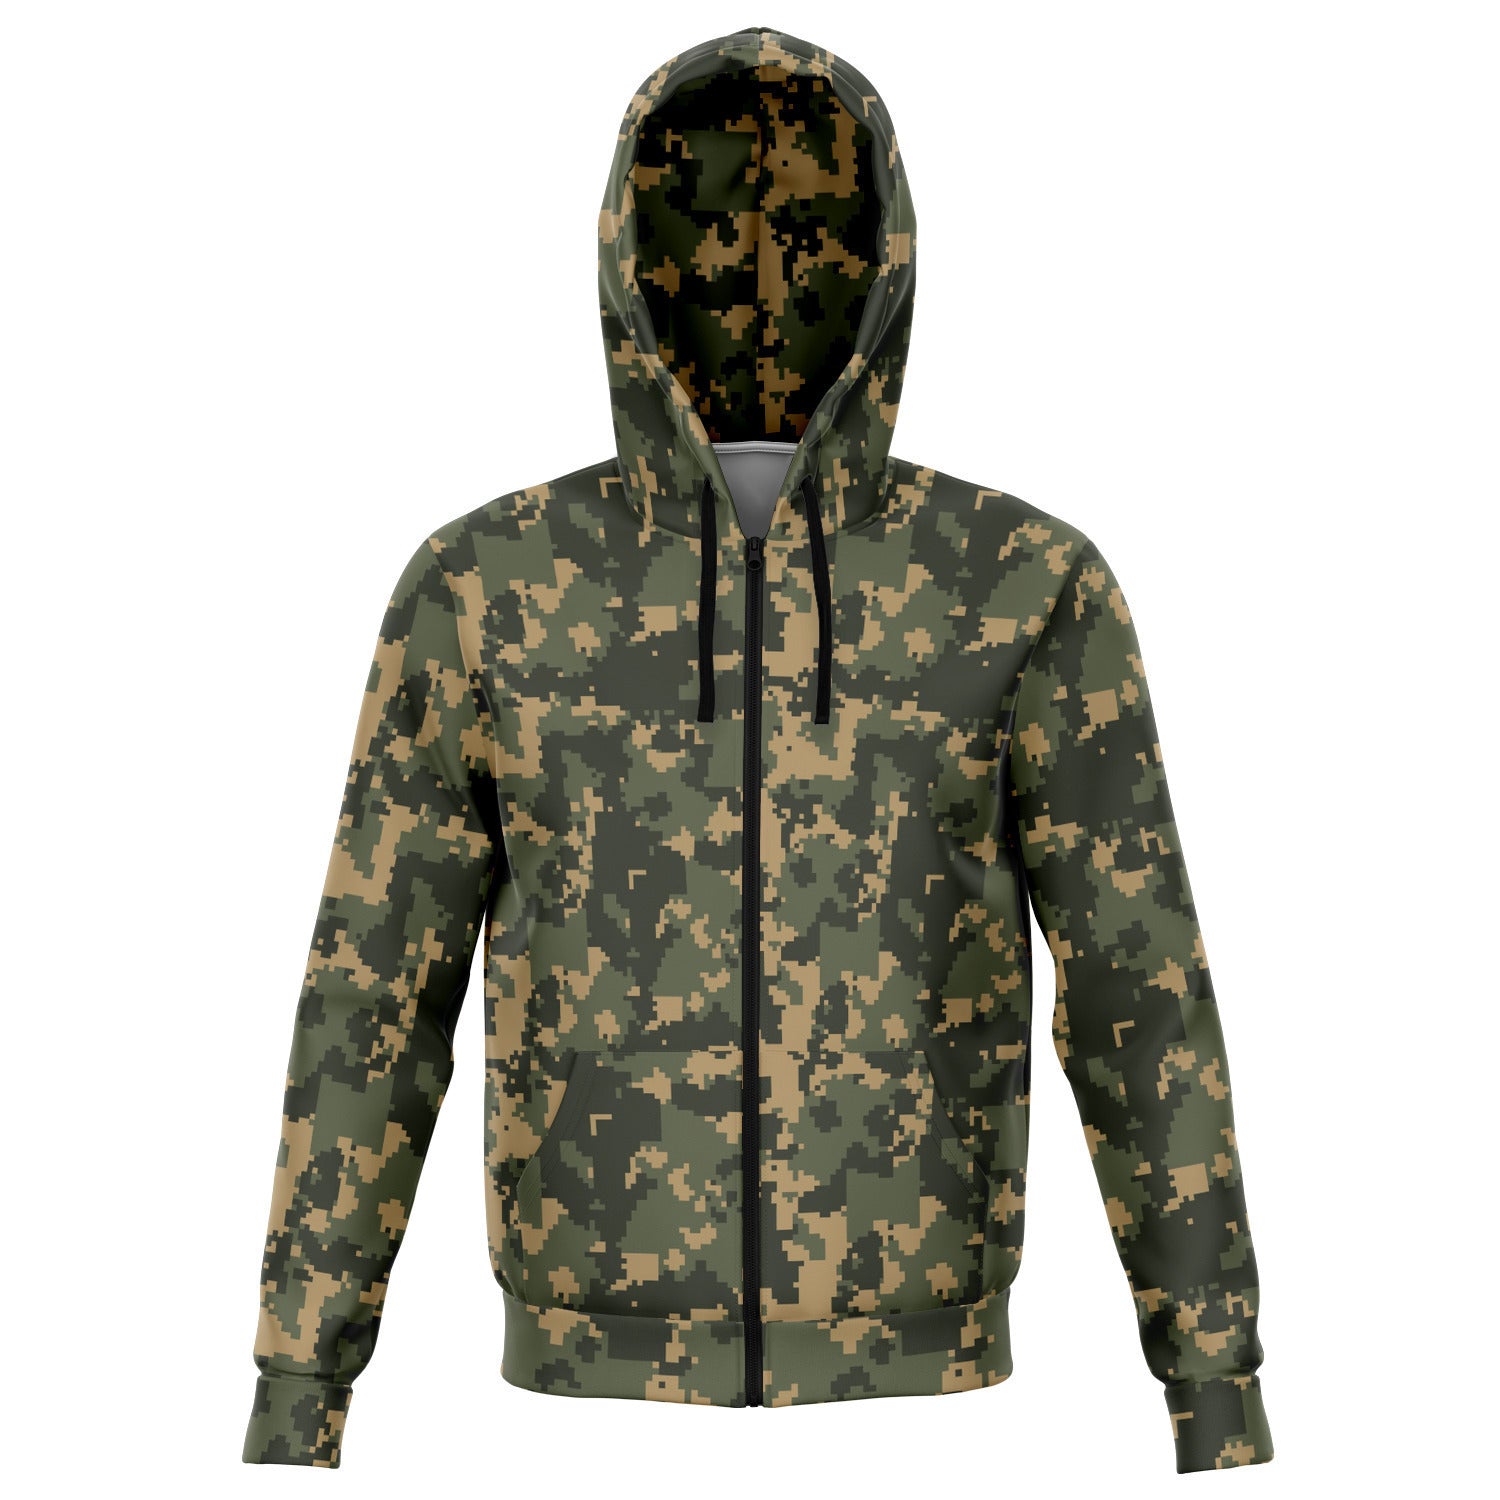 Unisex Digital Army Camouflage Athletic Zip-Up Hoodie